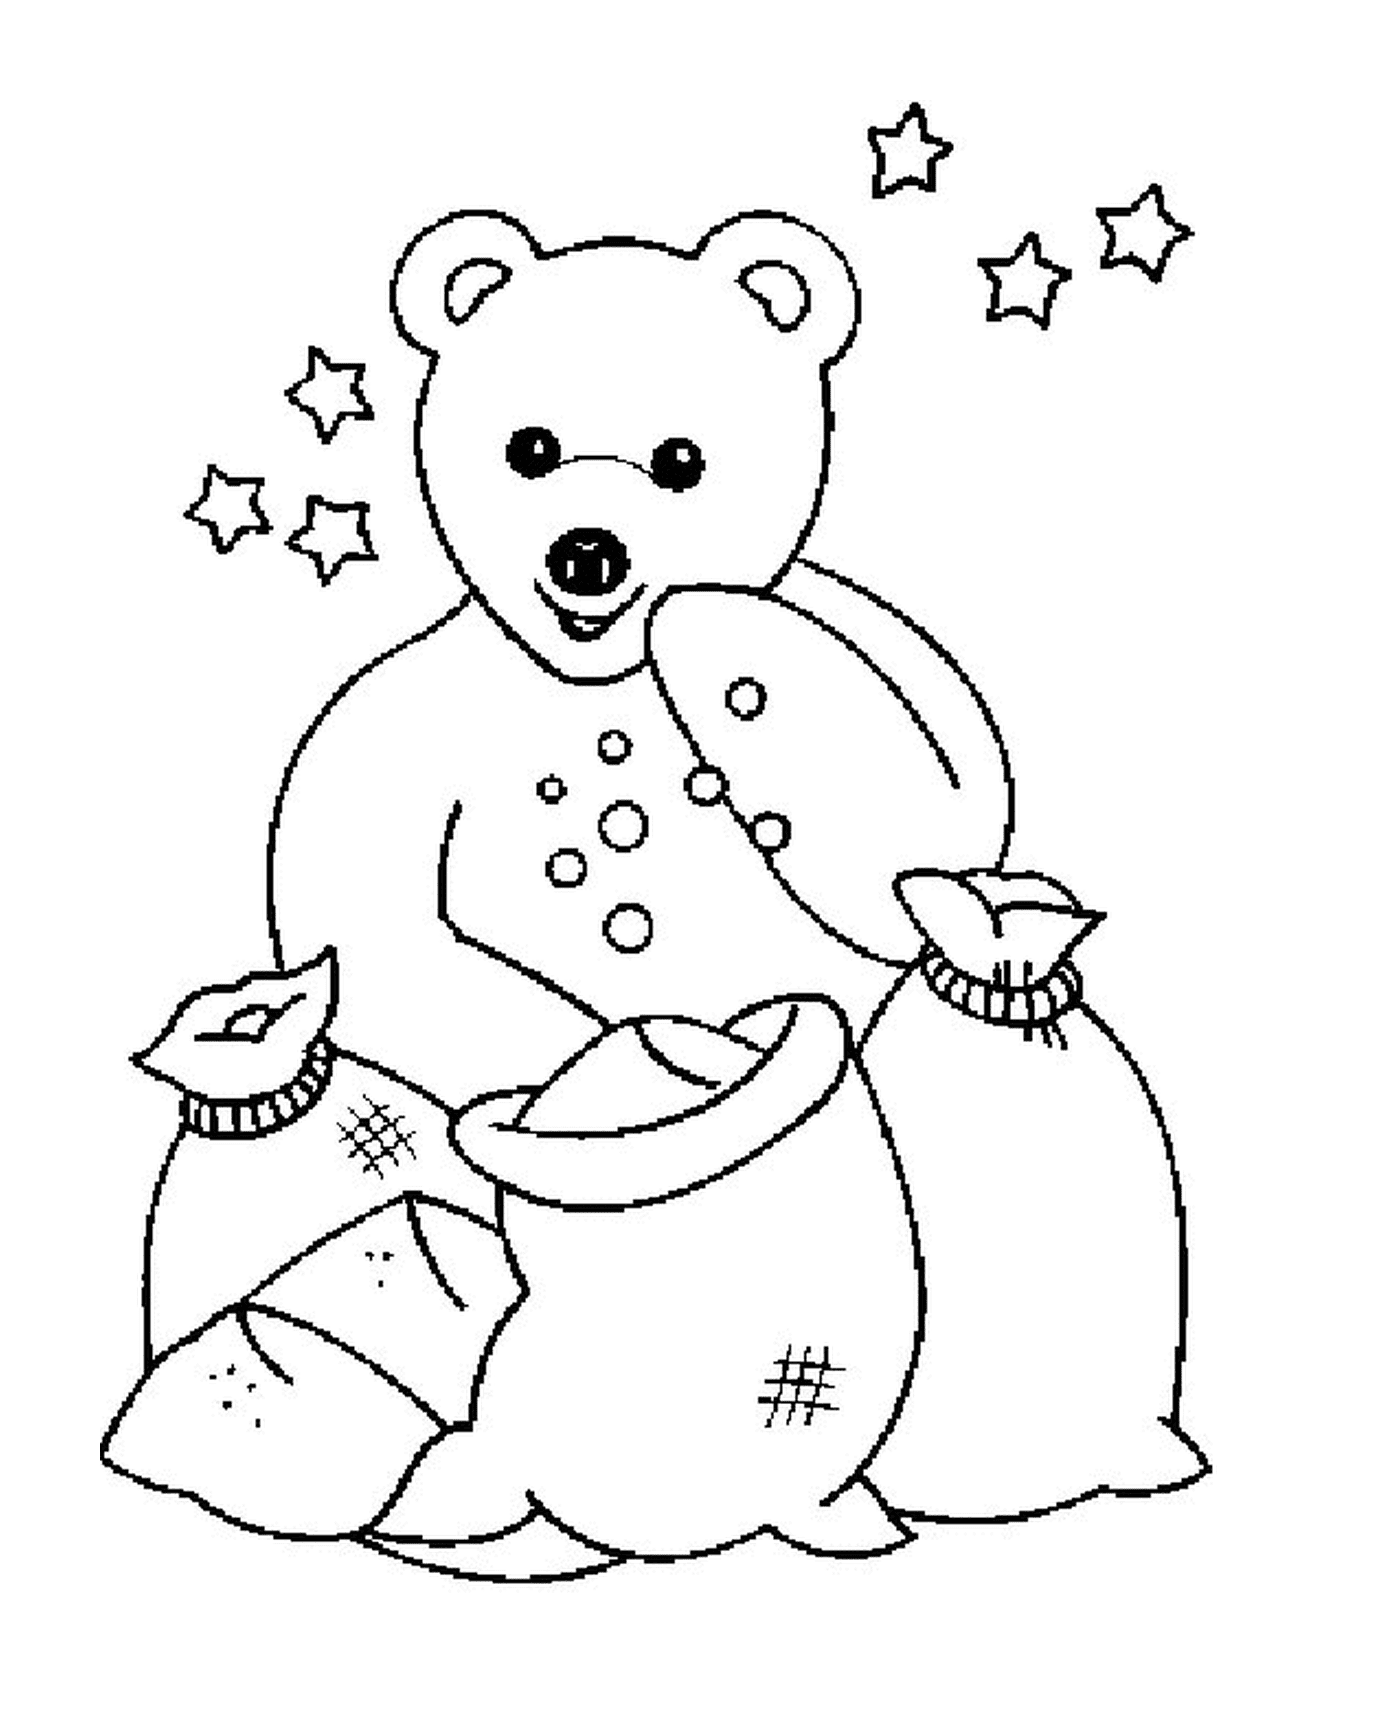  Bären mit Sandsäcken 